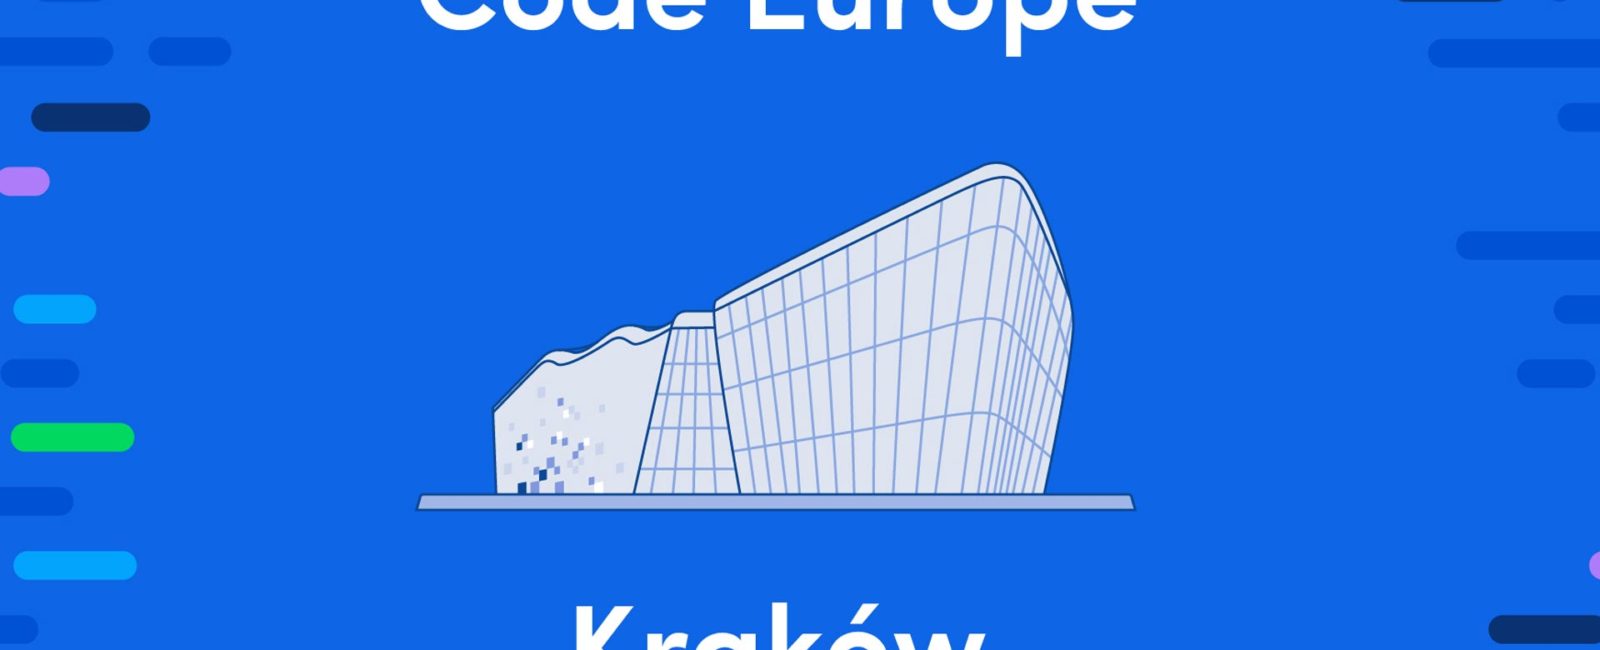 Code-Europe-Kraków